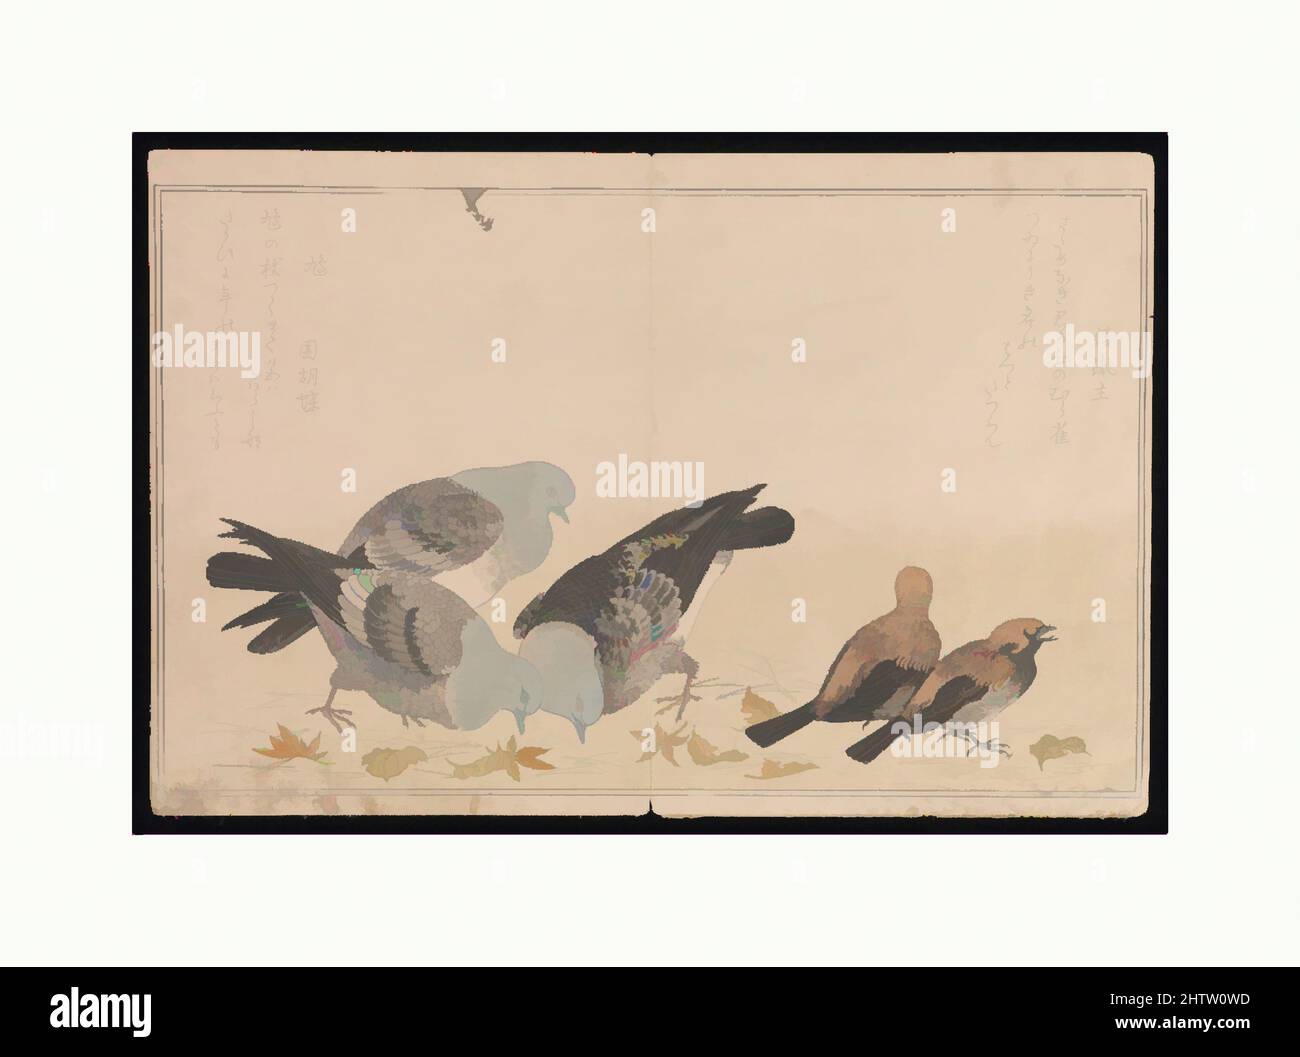 Art inspiré par Myriad Birds : Un concours de poésie ludique (Momo chidori kyōka-awase), 2 vol., 『百千鳥狂歌合』, période Edo (1615–1868), 1790, Japon, deux volumes; livres imprimés en bois; encre et couleur sur papier, chacun : 10 × 7 1/2 × 1/4 po. (25,4 × 19,1 × 0,6 cm), Livres illustrés, Kitagawa Utamaro, oeuvres classiques modernisées par Artotop avec une touche de modernité. Formes, couleur et valeur, impact visuel accrocheur sur l'art émotions par la liberté d'œuvres d'art d'une manière contemporaine. Un message intemporel qui cherche une nouvelle direction créative. Artistes qui se tournent vers le support numérique et créent le NFT Artotop Banque D'Images